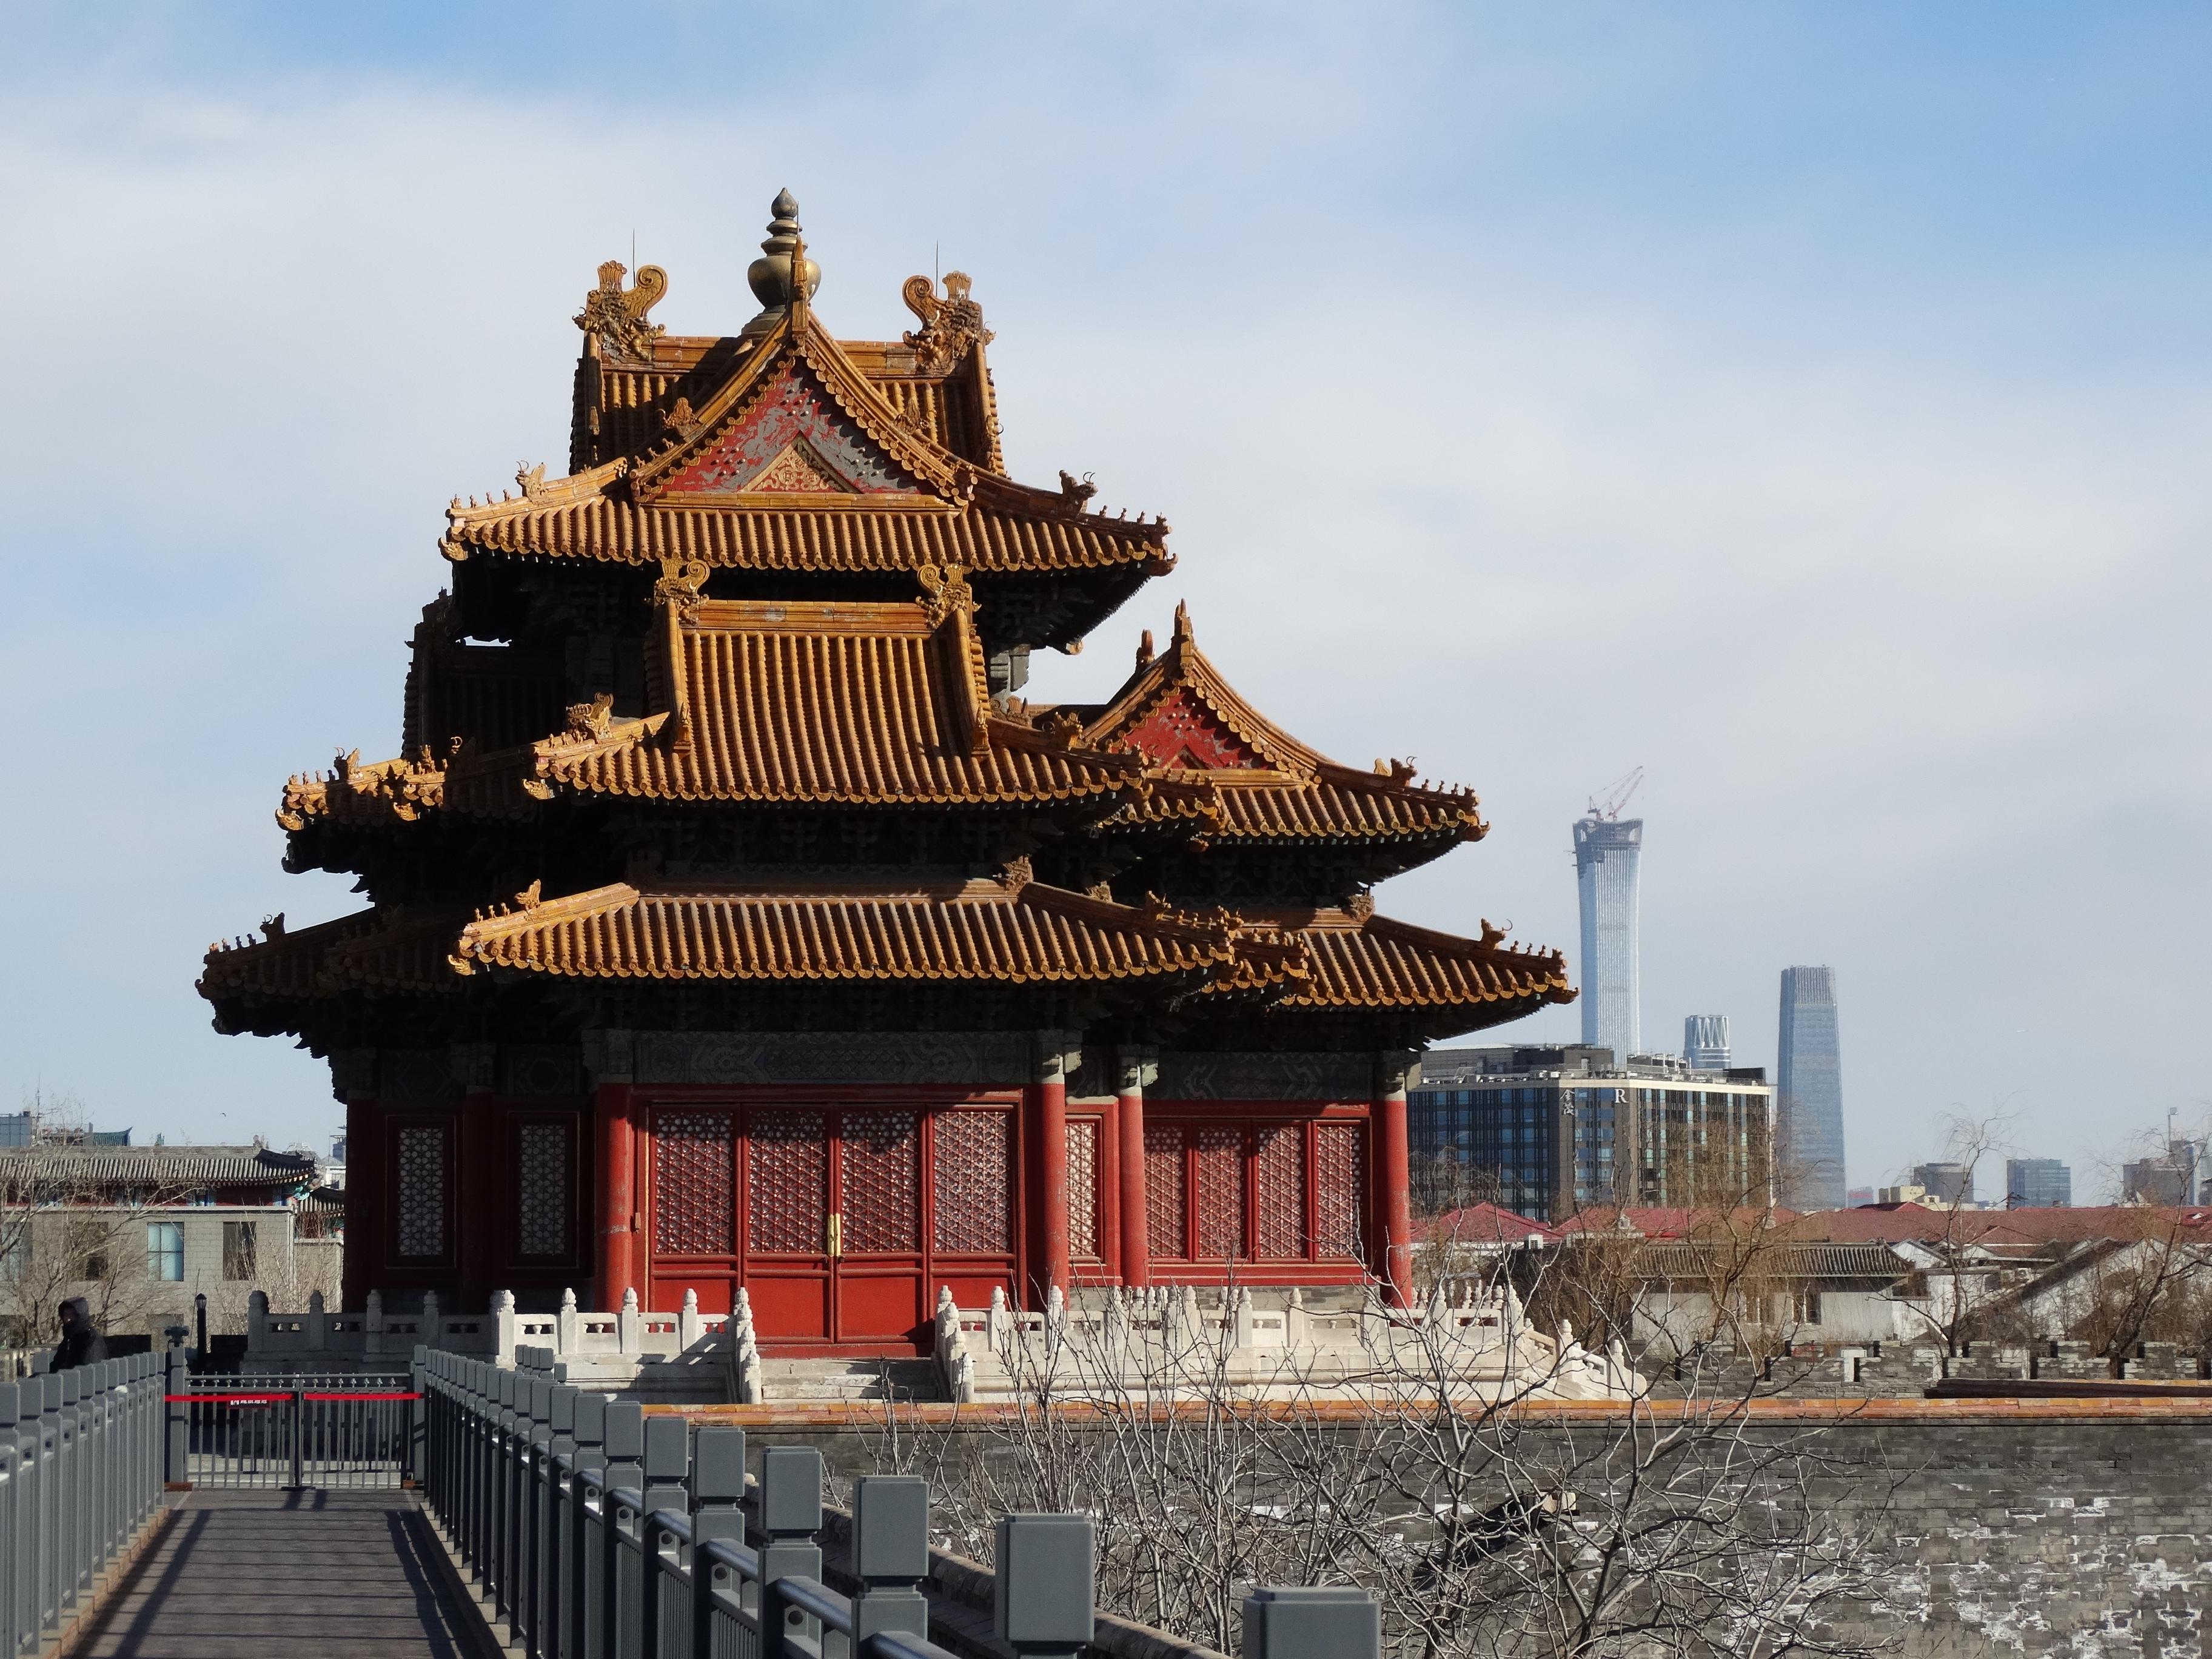 宫殿,旧称为紫禁城,位于北京中轴线的中心,是中国古代宫廷建筑之精华